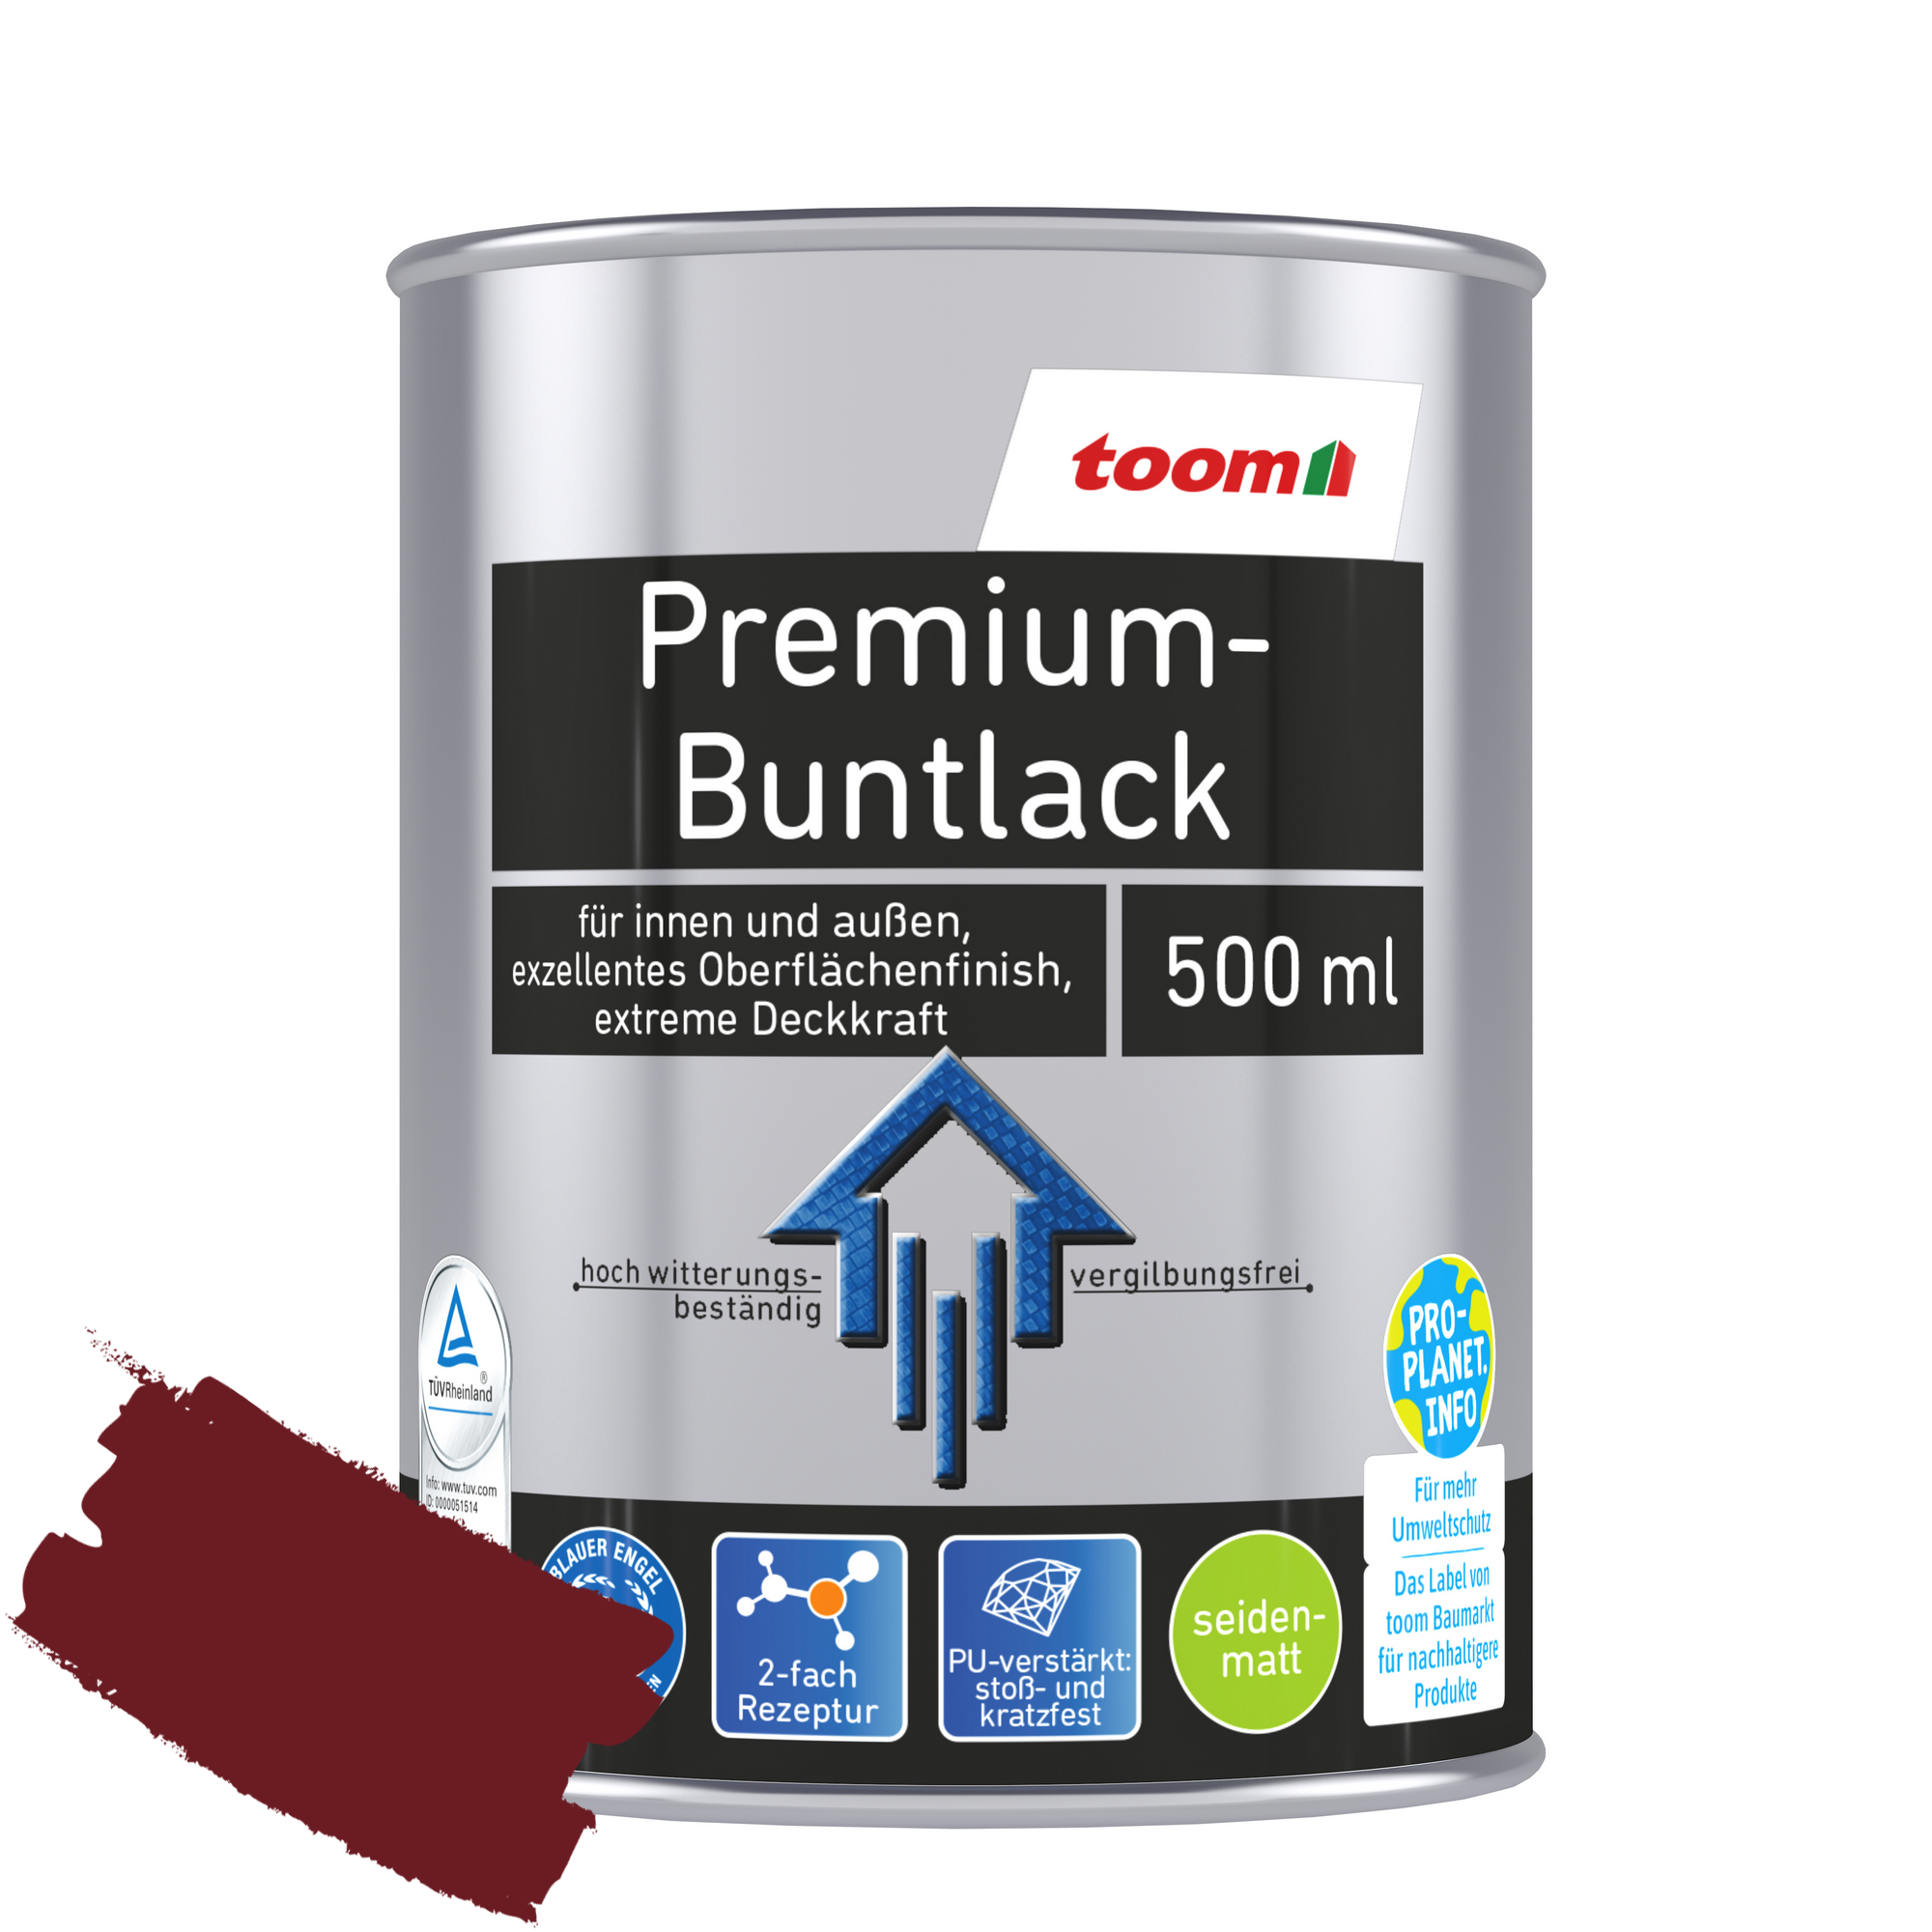 Premium-Buntlack purpurrot seidenmatt 500 ml + product picture